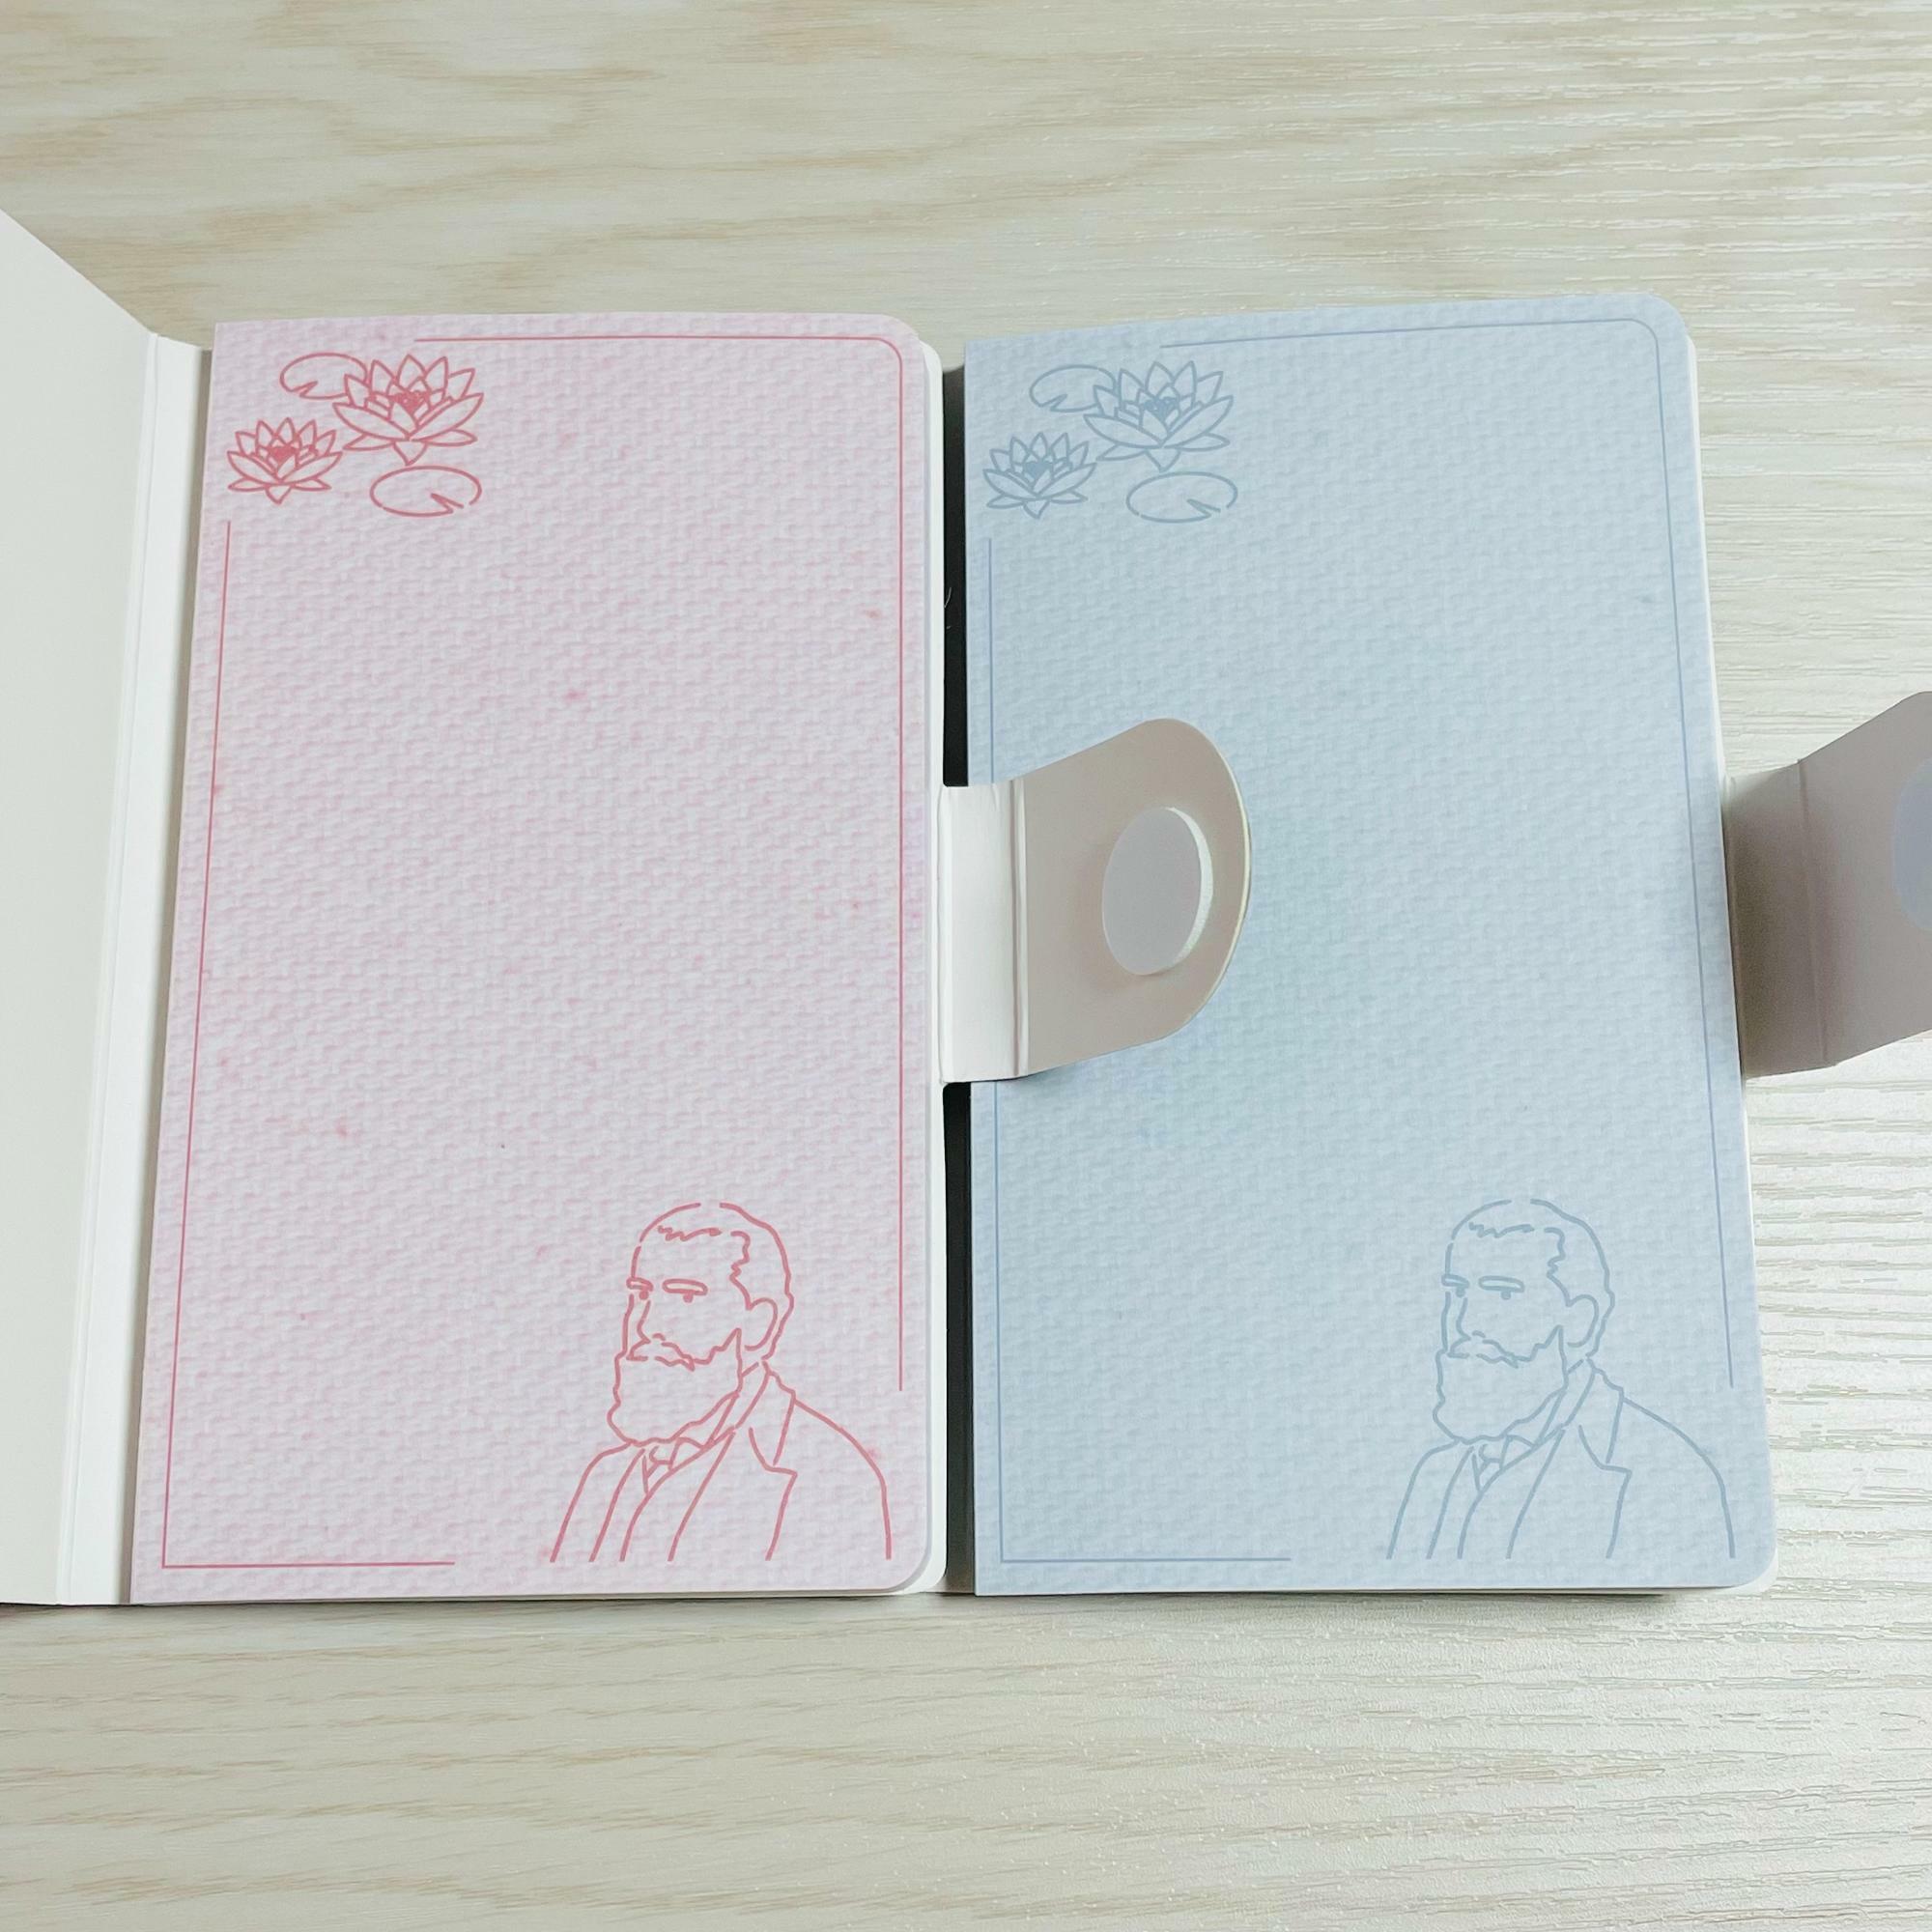 モネのメモ用紙のデザイン